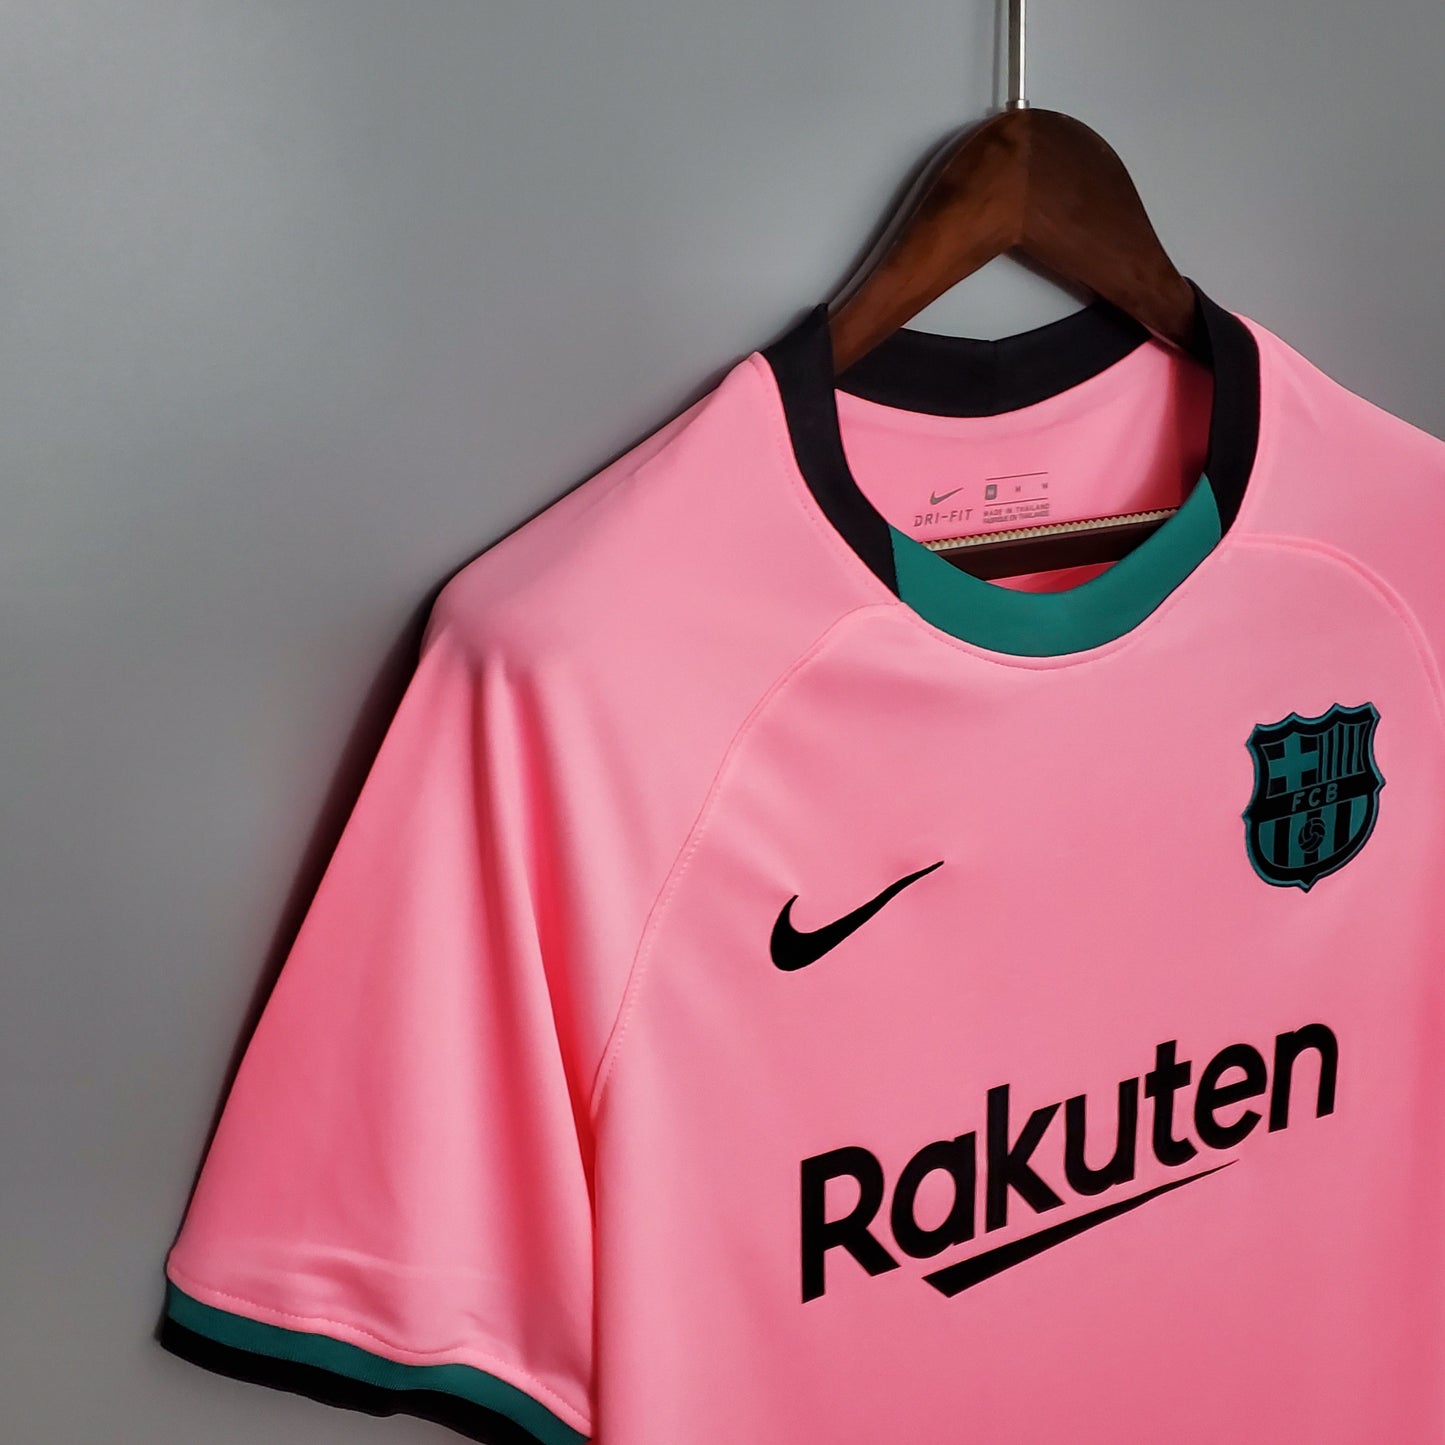 Barcelona 20/21 Tercer kit | Retro